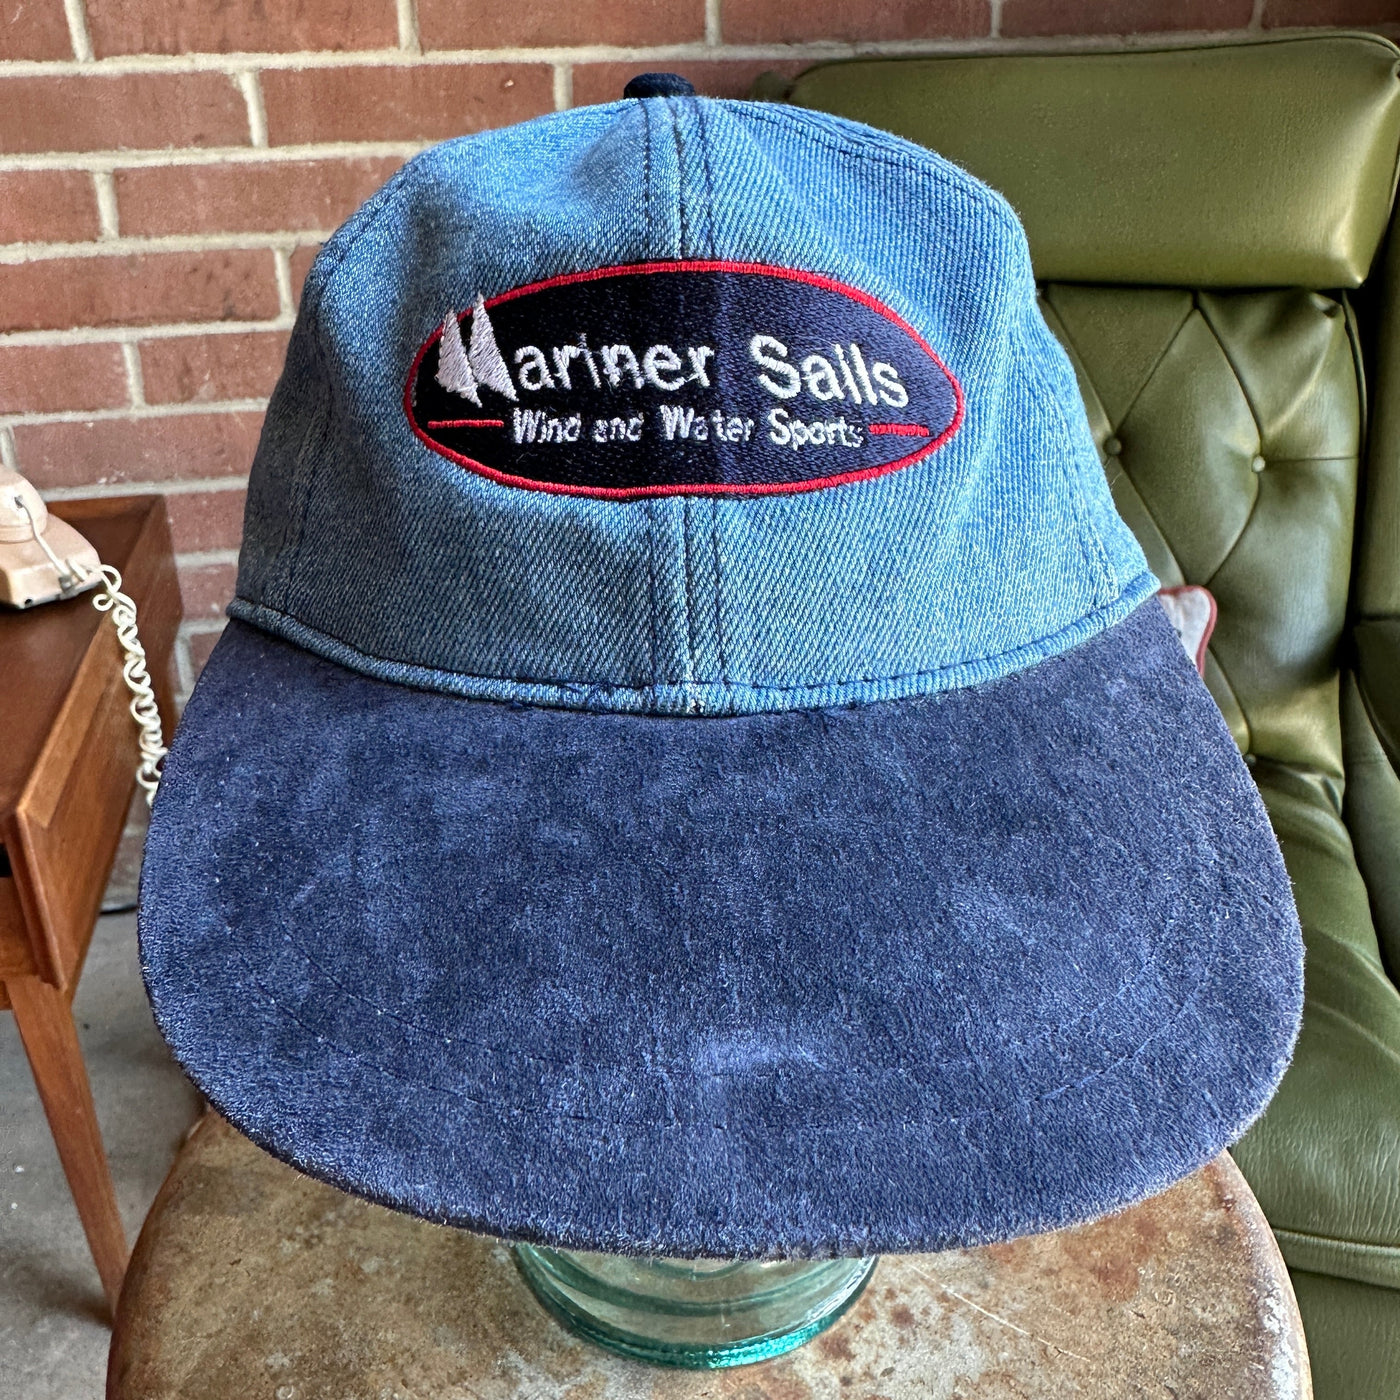 Vintage Luna Pier “Mariner Sails” Hat